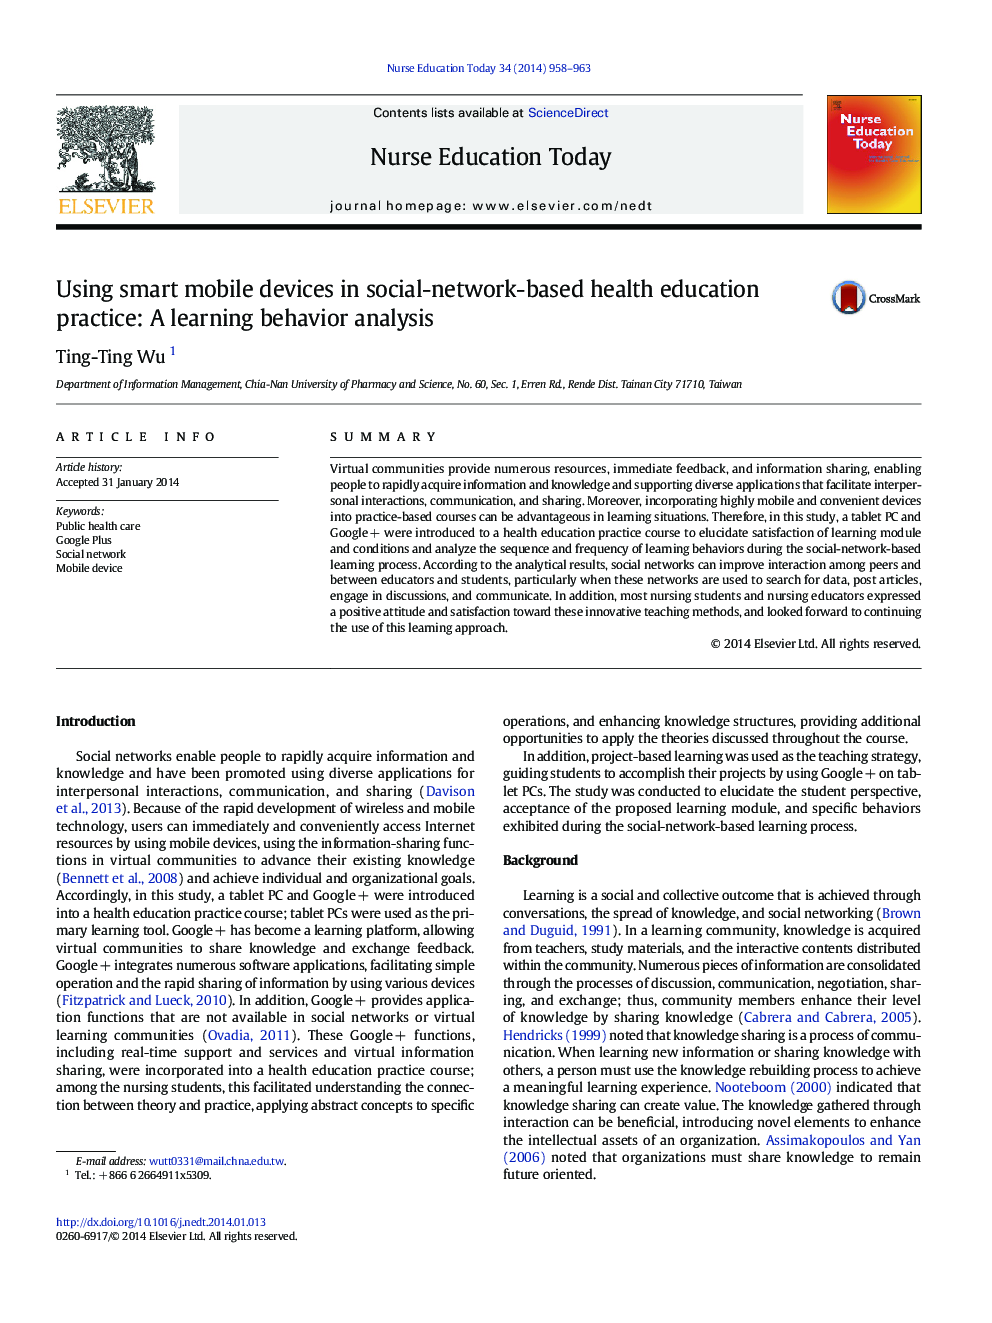 استفاده از دستگاه های هوشمند تلفن همراه در آموزش مبتنی بر آموزش بهداشت مبتنی بر شبکه: یک تحلیل رفتار یادگیری 